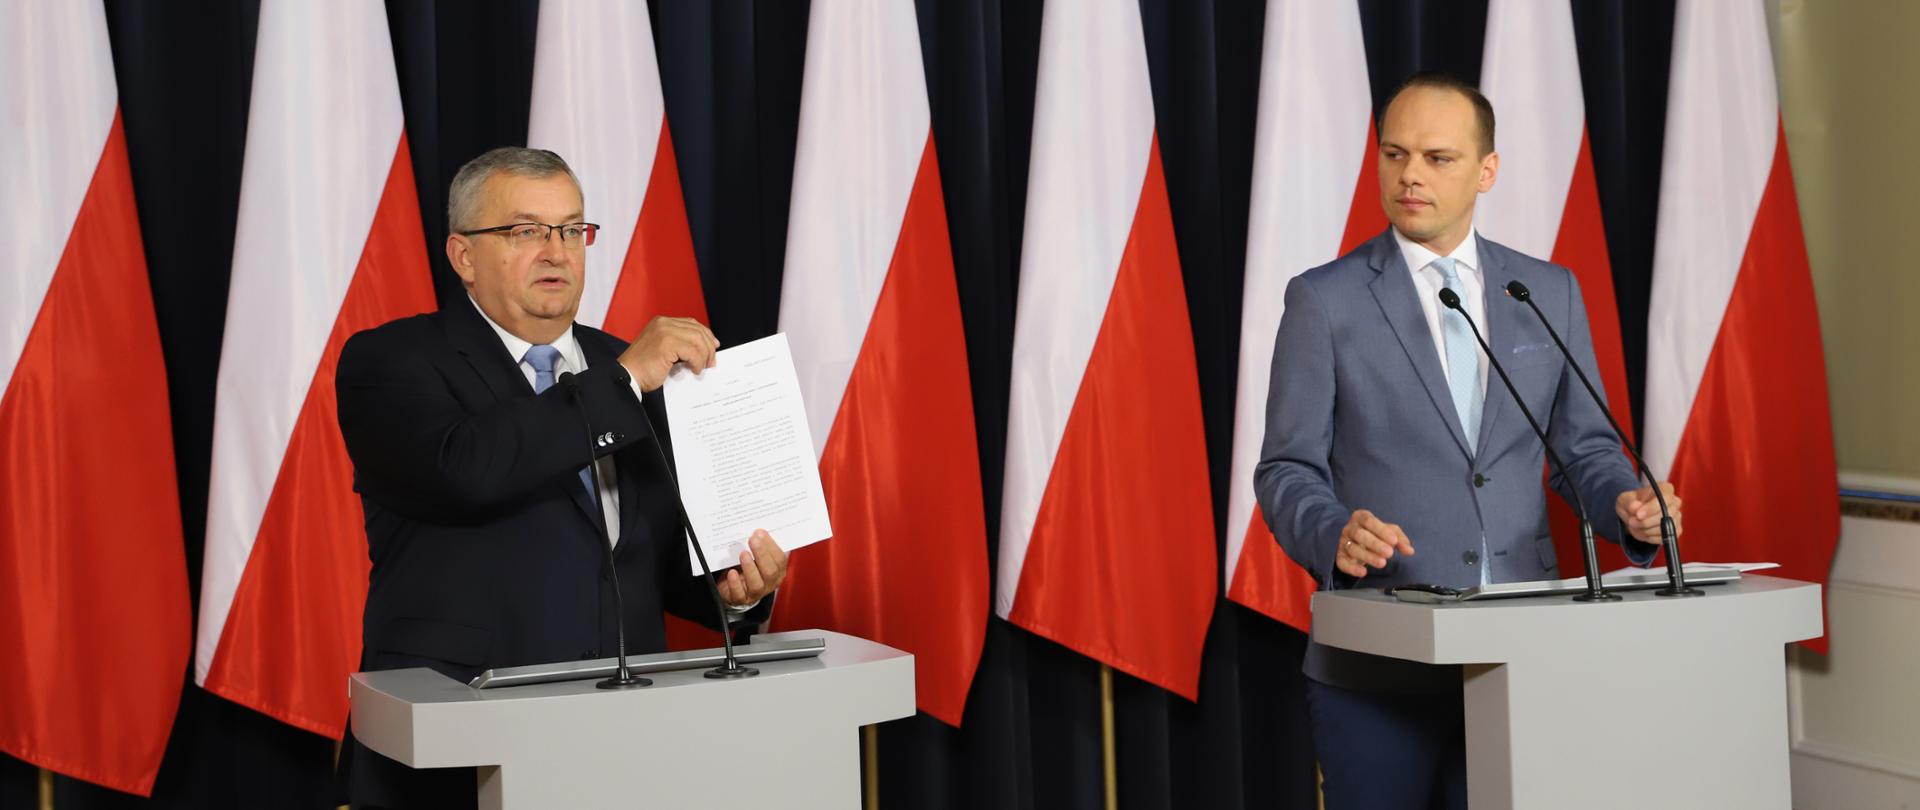 Minister A. Adamczyk i wiceminister R. Weber przedstawili propozycje przepisów dot. uto